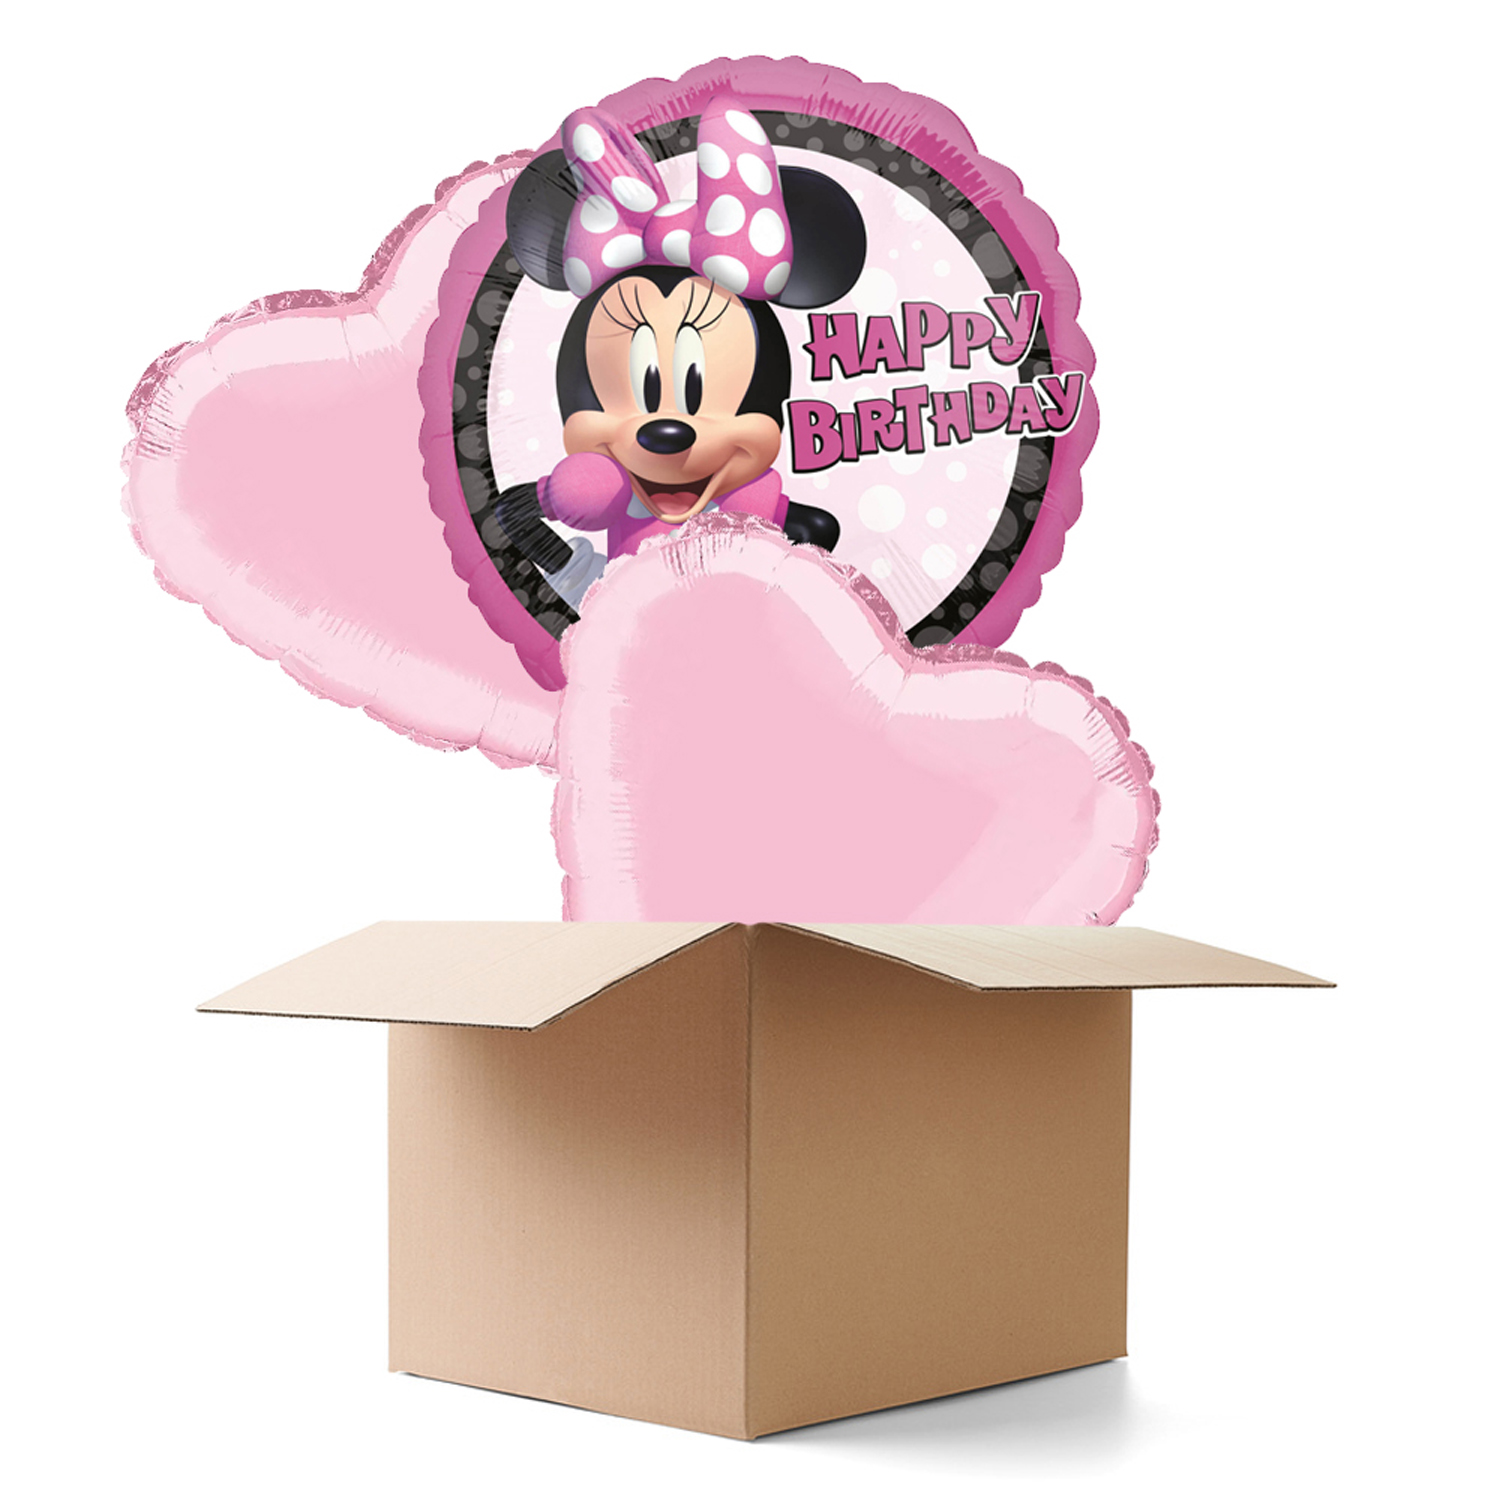 NEU Ballongrüsse Minnie Mouse Forever HBD, 3 Ballons